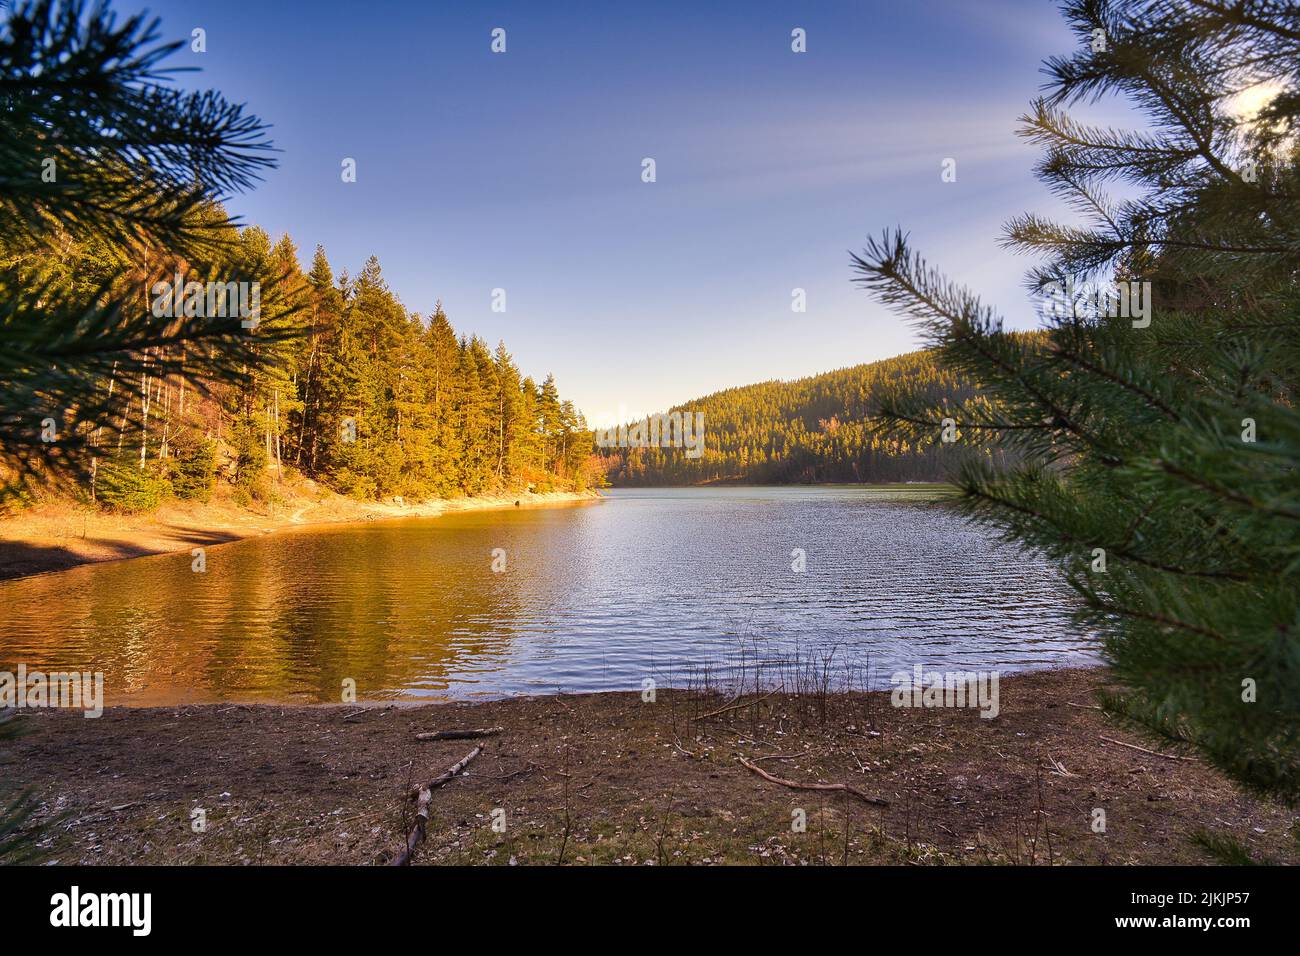 Ein natürlicher Landschaftsblick auf den Thüringer Wald in Deutschland mit einem See, der die Wärme der Sonnenstrahlen erhält Stockfoto